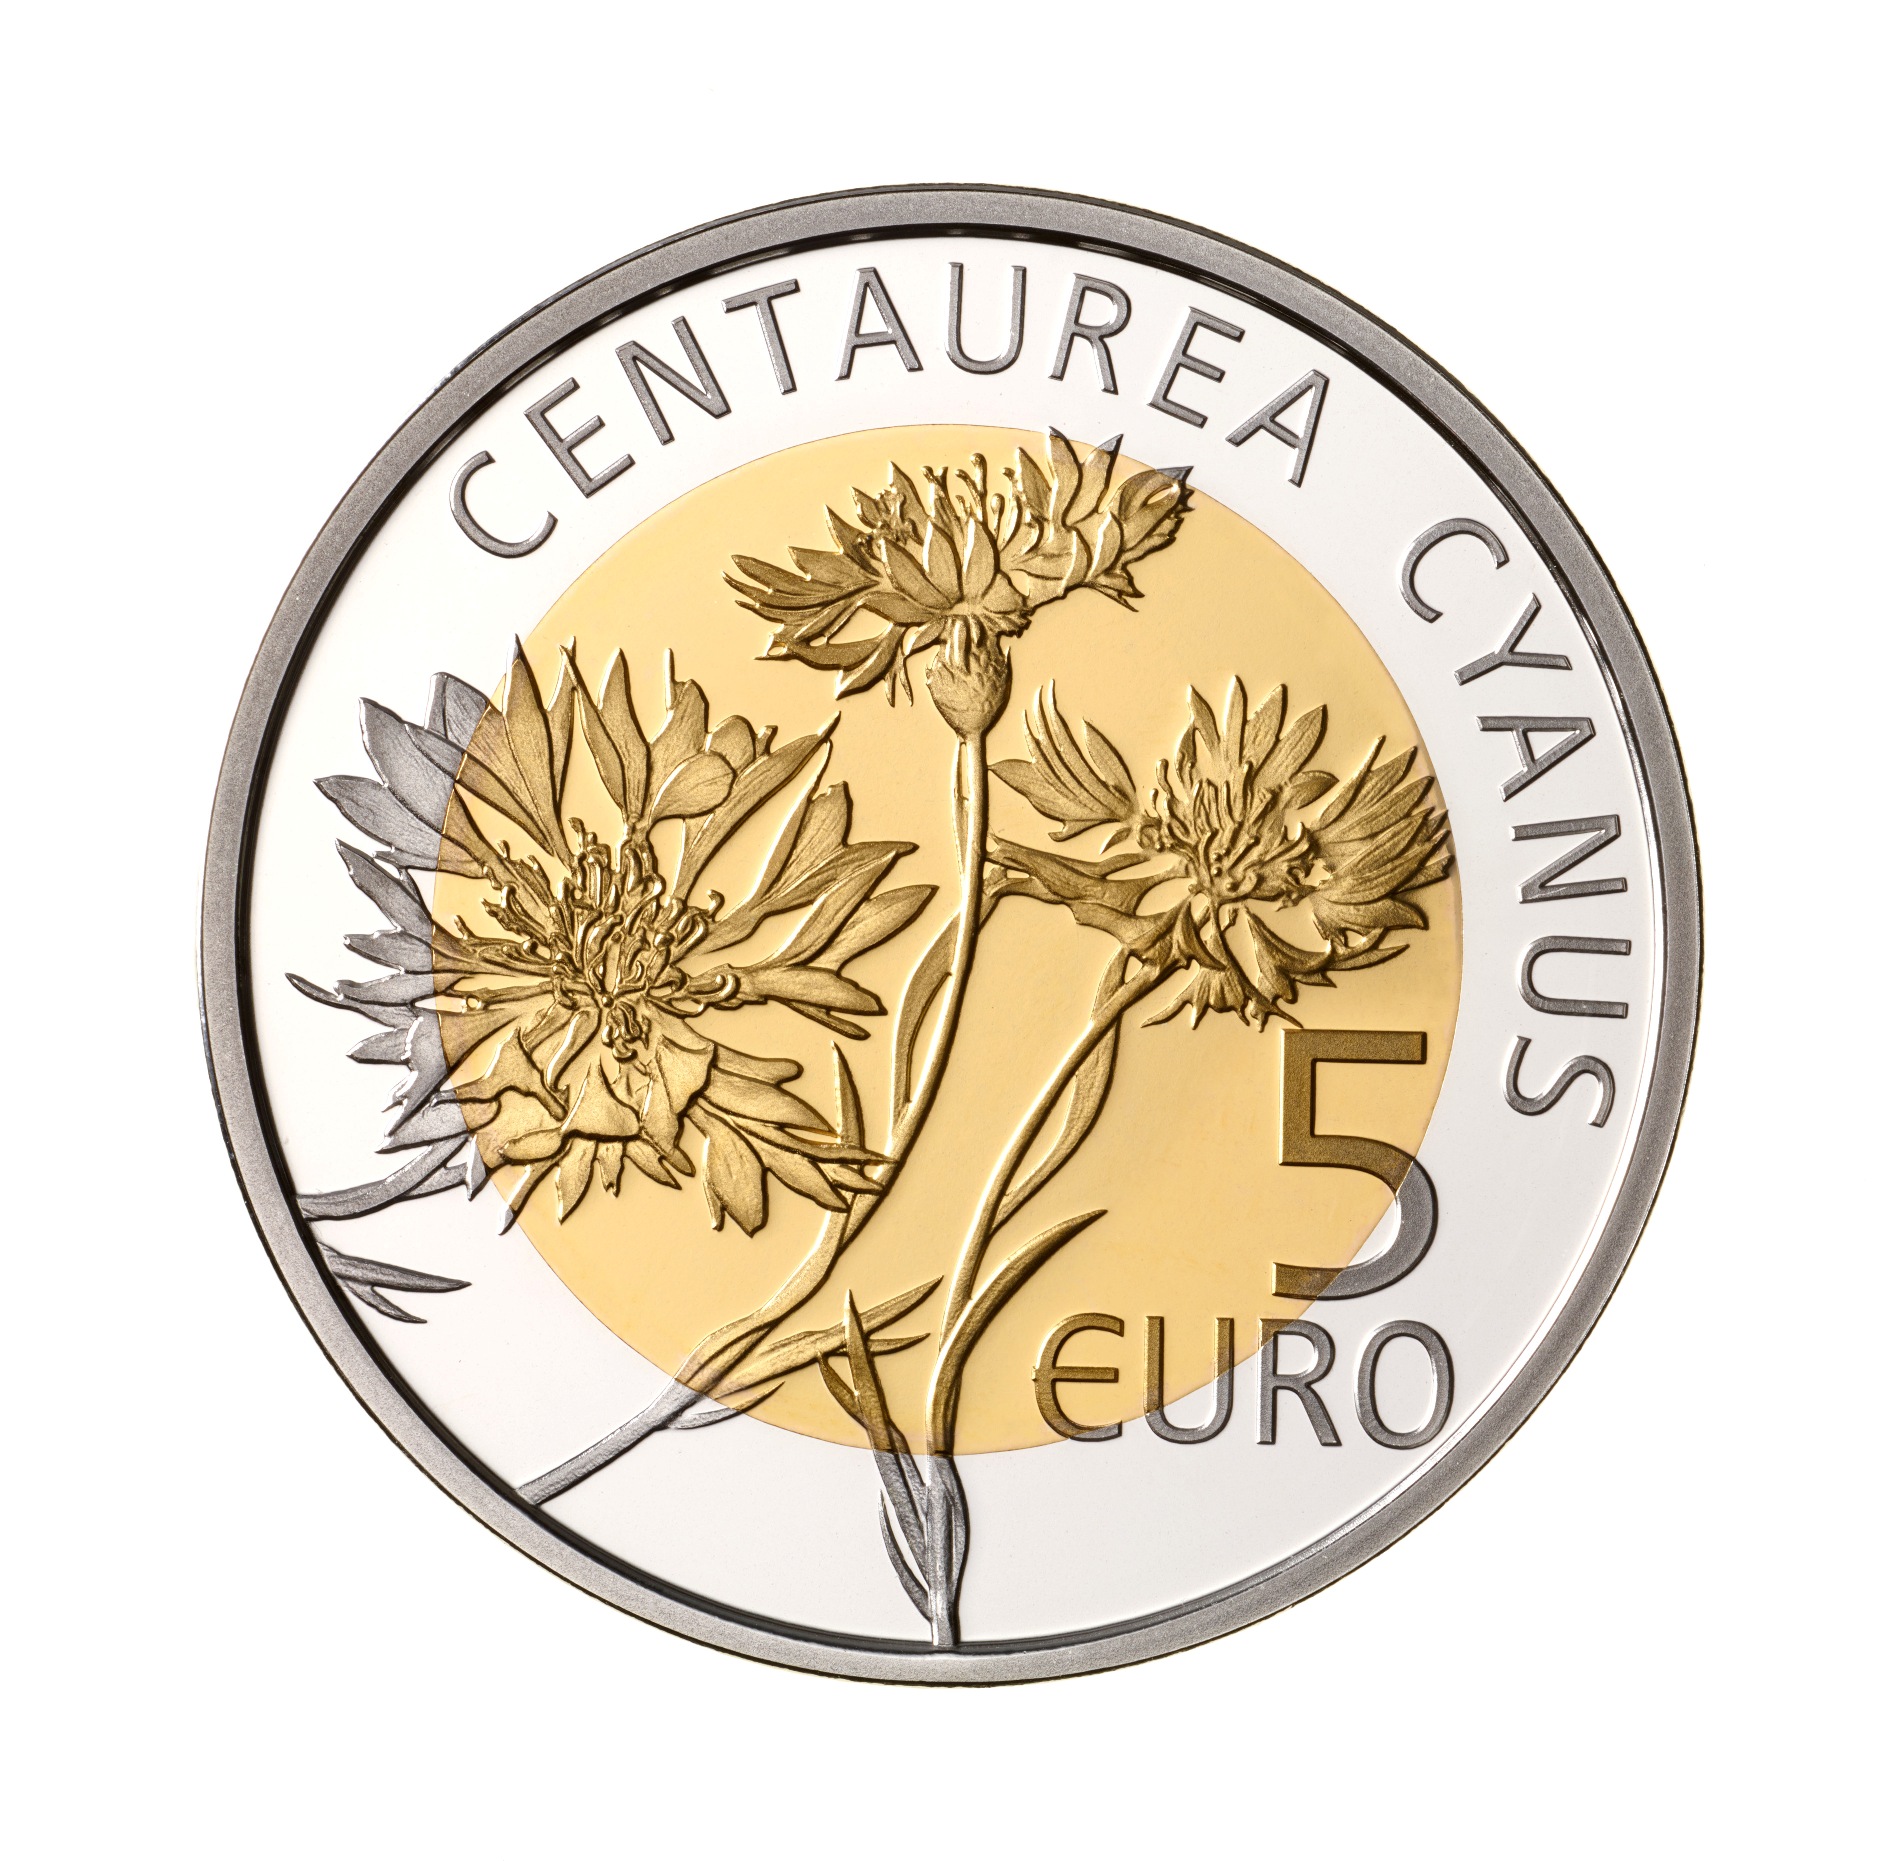 Centaurea Cyanus-a